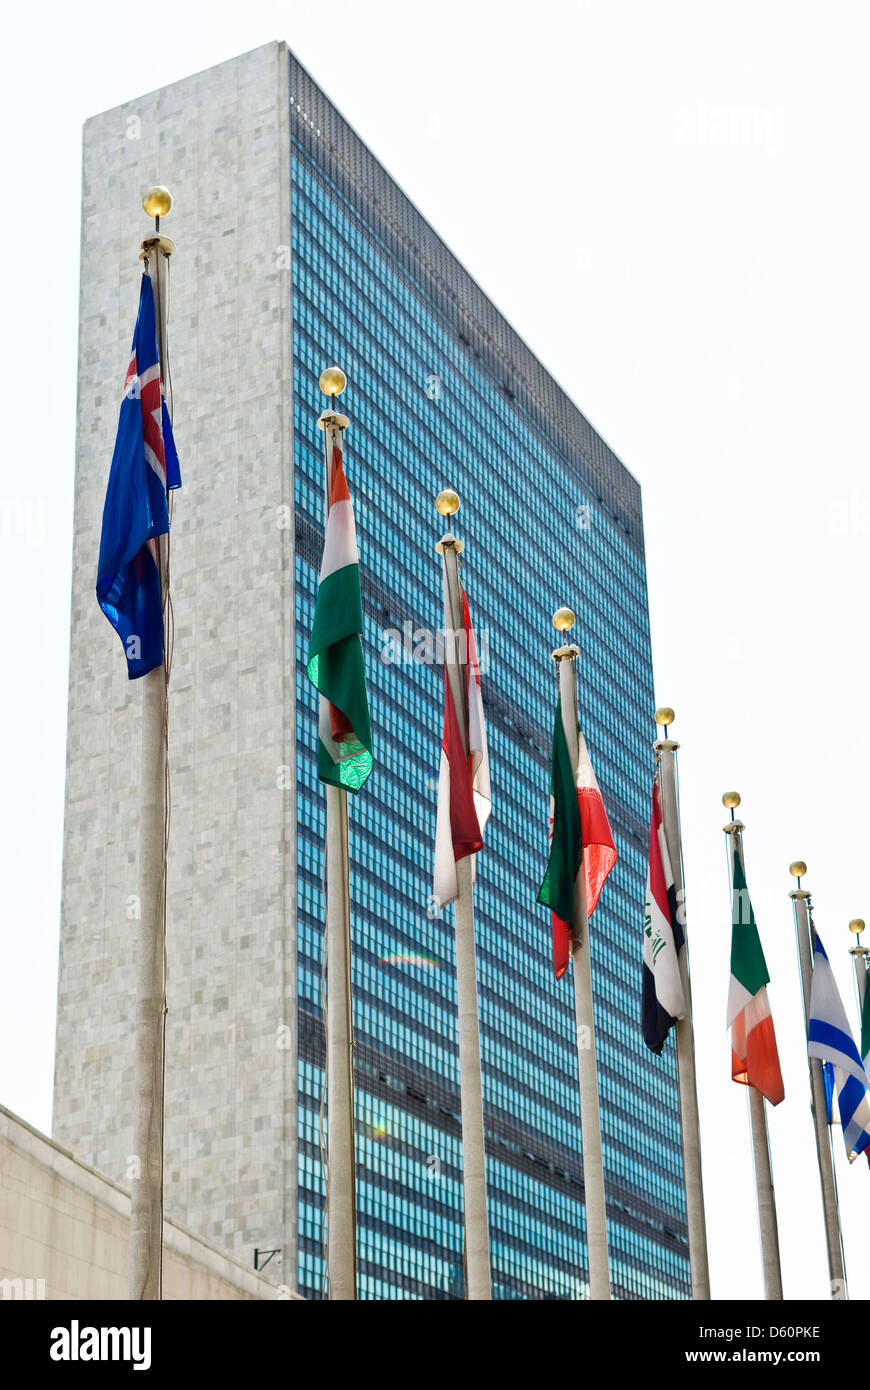 Palazzo delle Nazioni Unite, la sede delle Nazioni Unite, Manhattan, New York City, NYC, New York, Stati Uniti d'America - immagine presa dal suolo pubblico Foto Stock